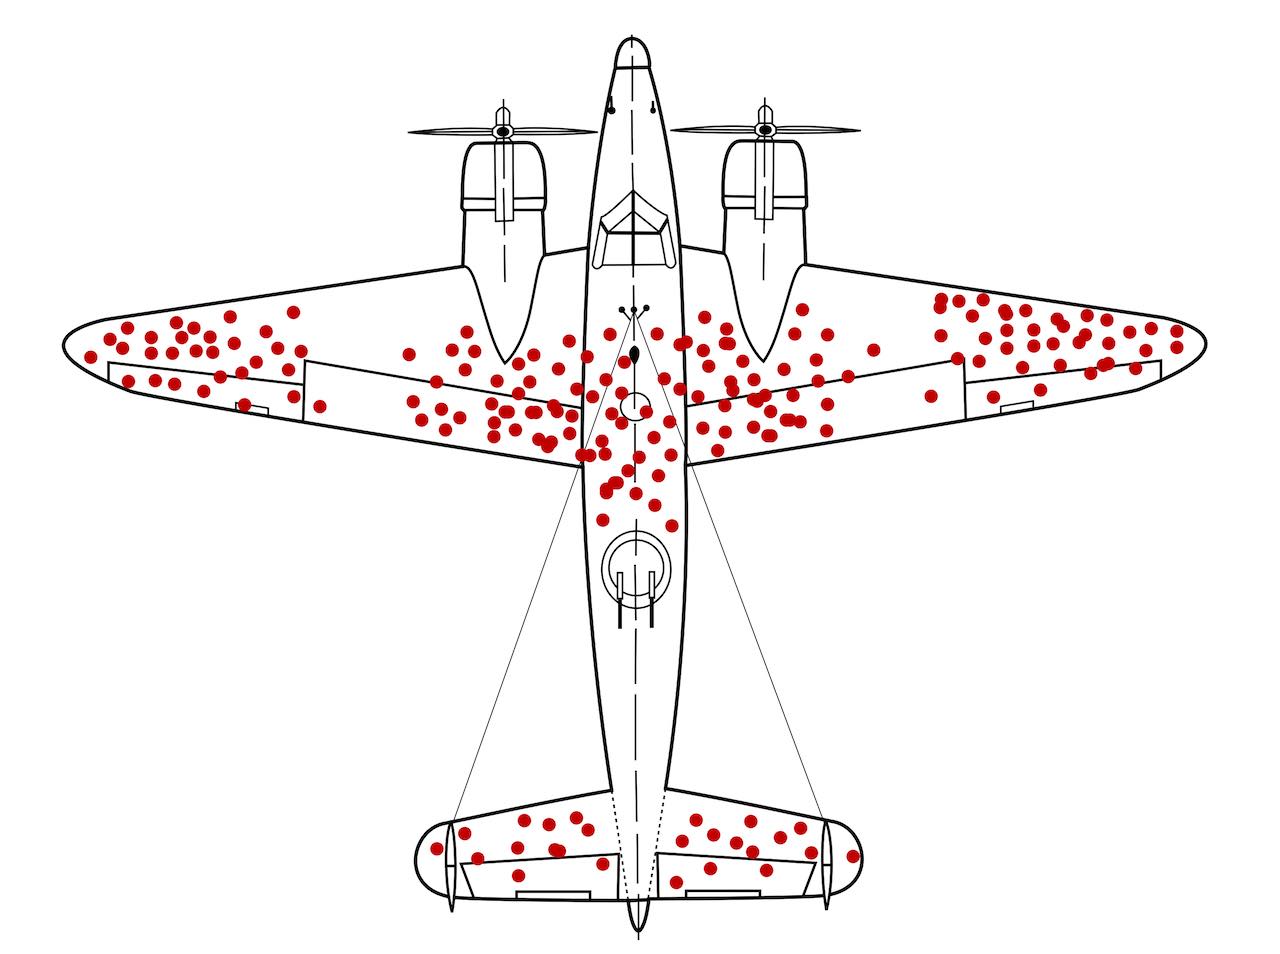 Ilustración esquemática del sesgo del superviviente en el patrón de metralla recibida por un avión durante la Segunda Guerra Mundial. Martin Grandjean (diseño), McGeddon (imagen), Cameron Moll (concepto). Trabajo para la Wikipedia